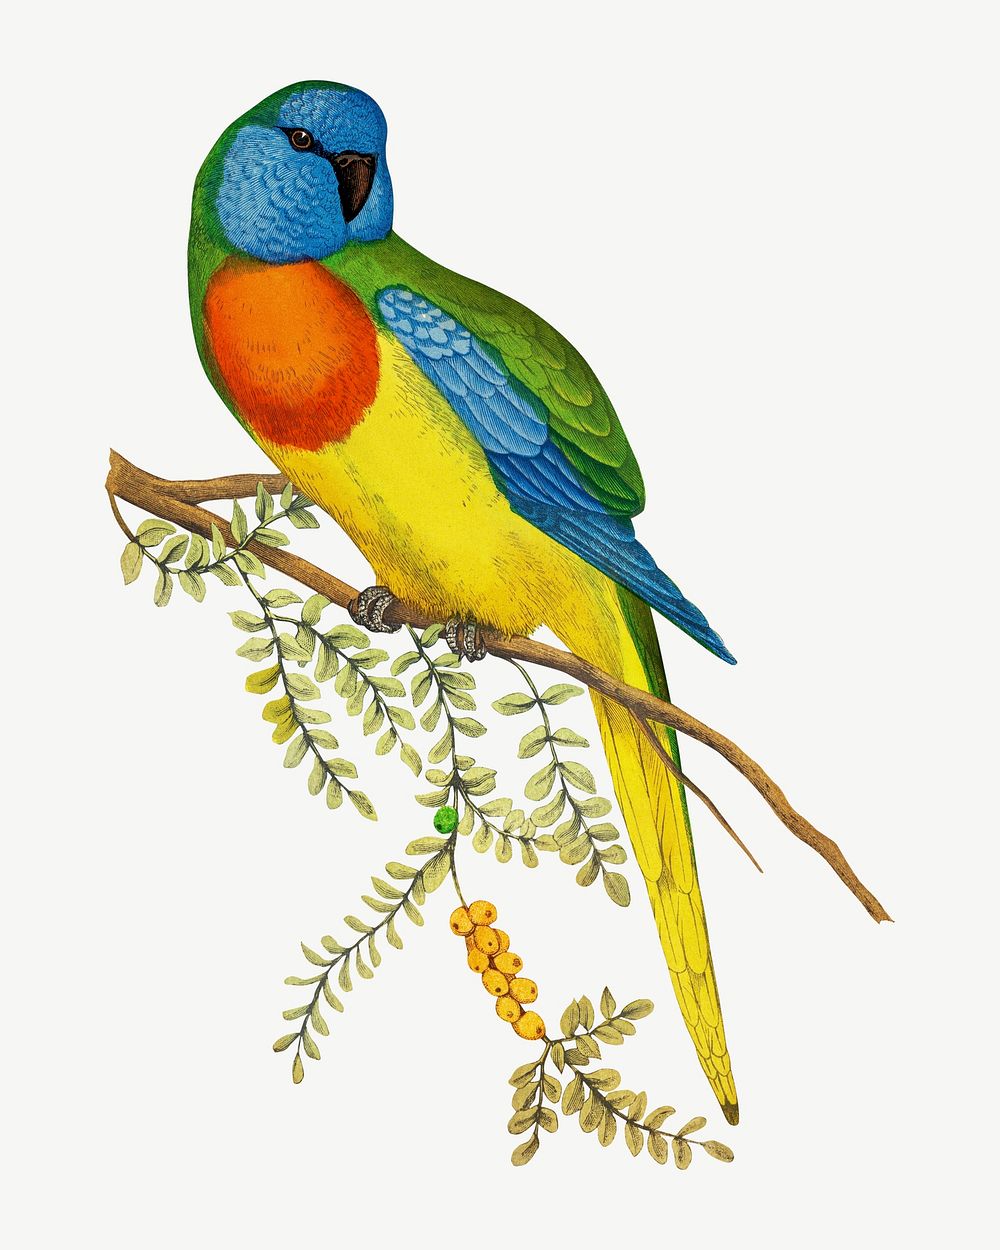 Splendid parakeet, vintage bird illustration psd. Remixed by rawpixel.